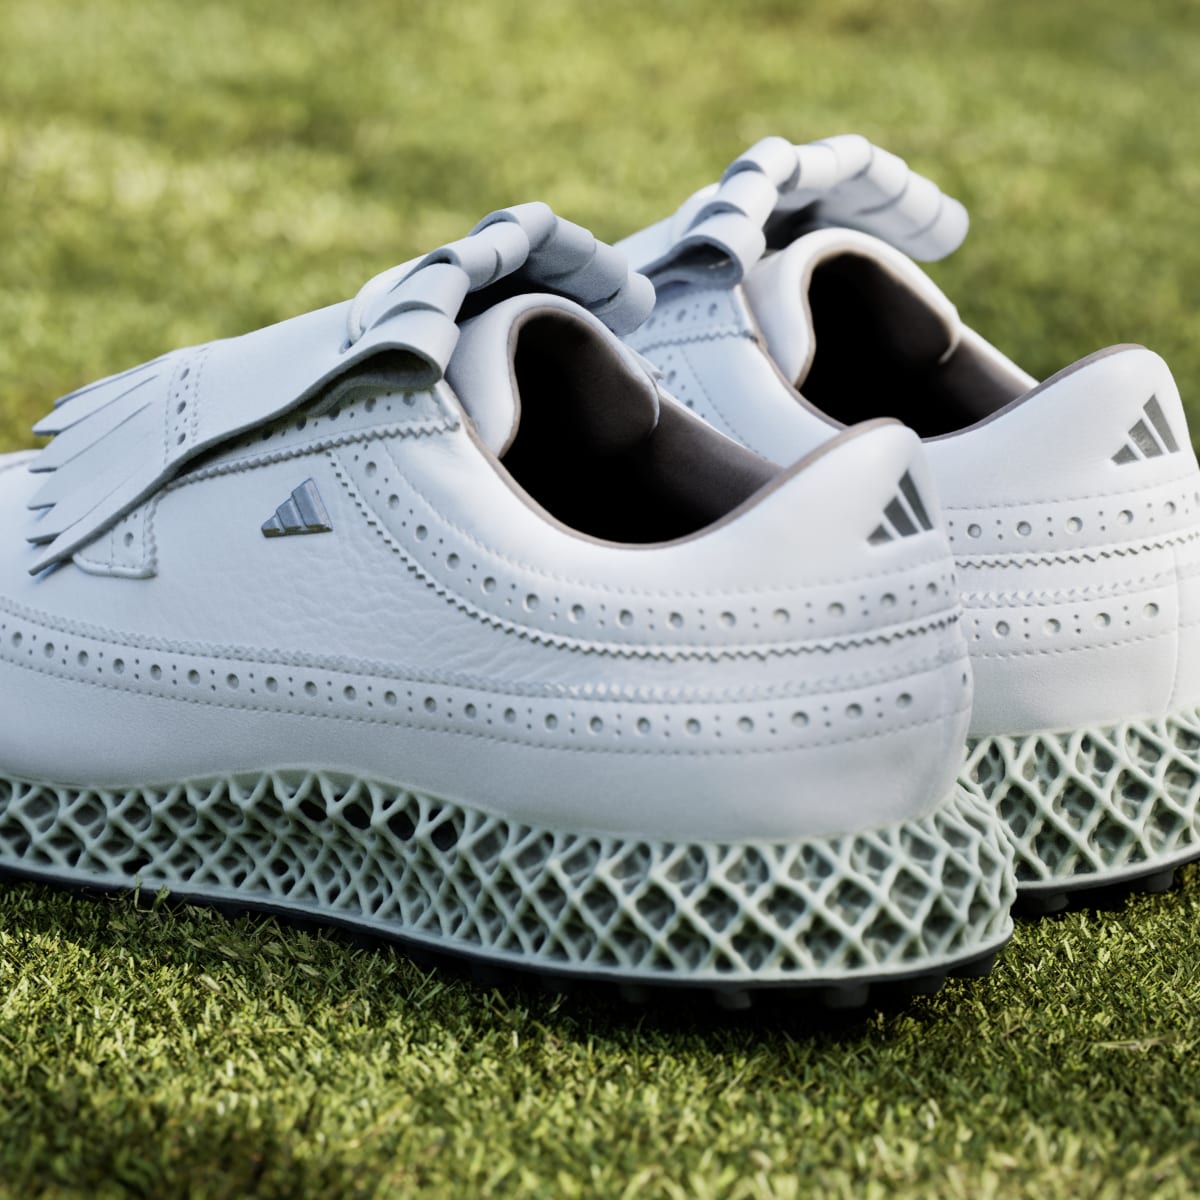 Adidas Zapatilla de golf MC87 Adicross 4D Spikeless. 9